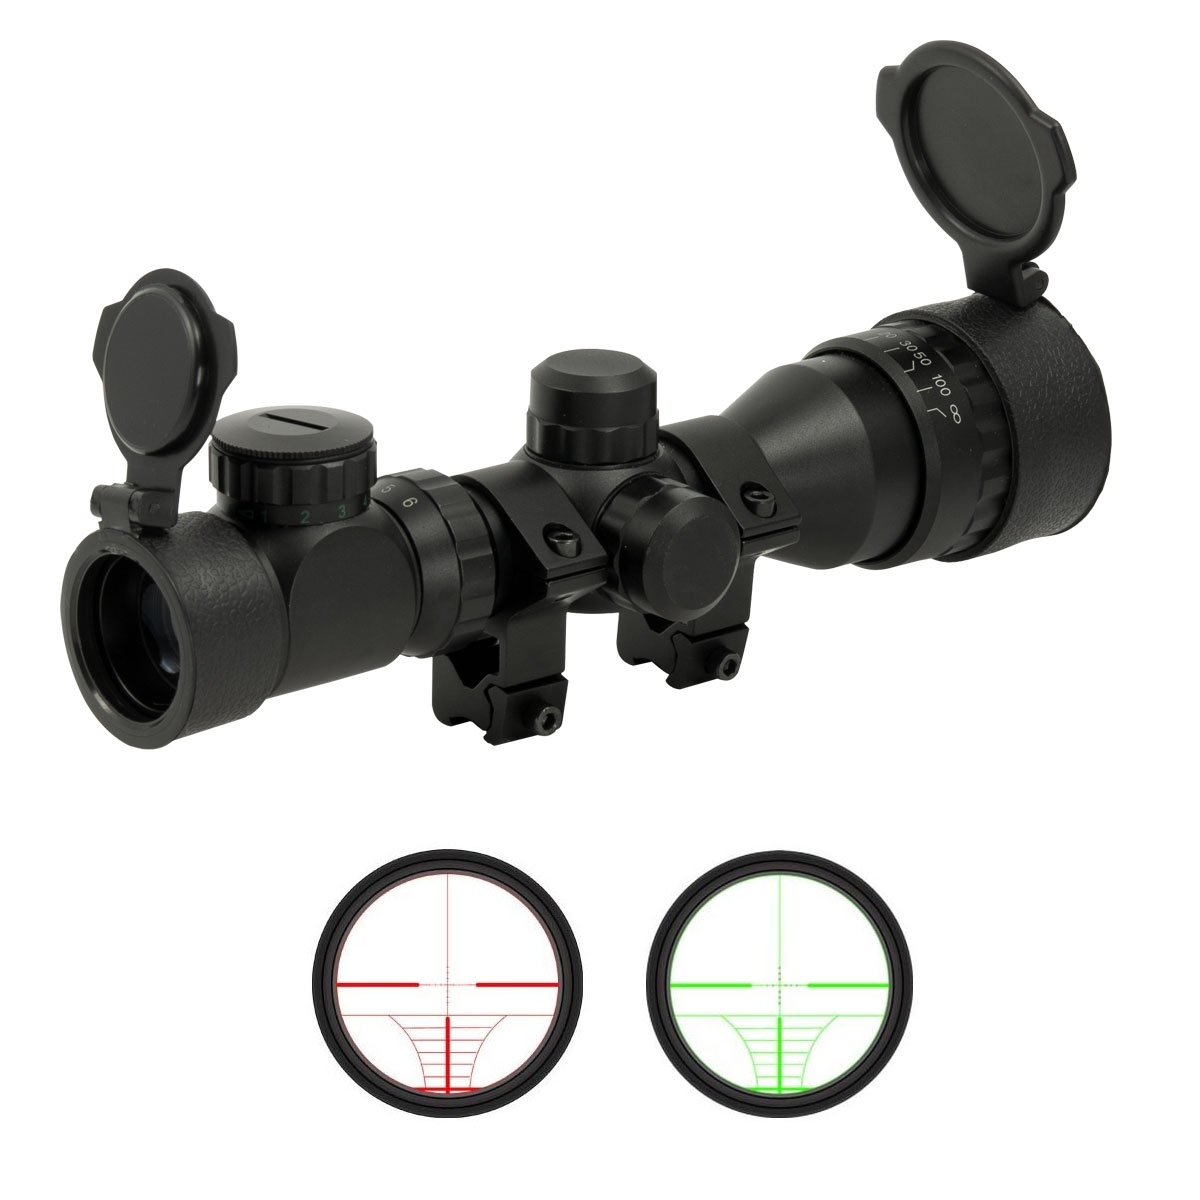 Zielfernrohr 3-9x50 beleuchtet für Luftgewehre mit 11 mm Prismenschiene 